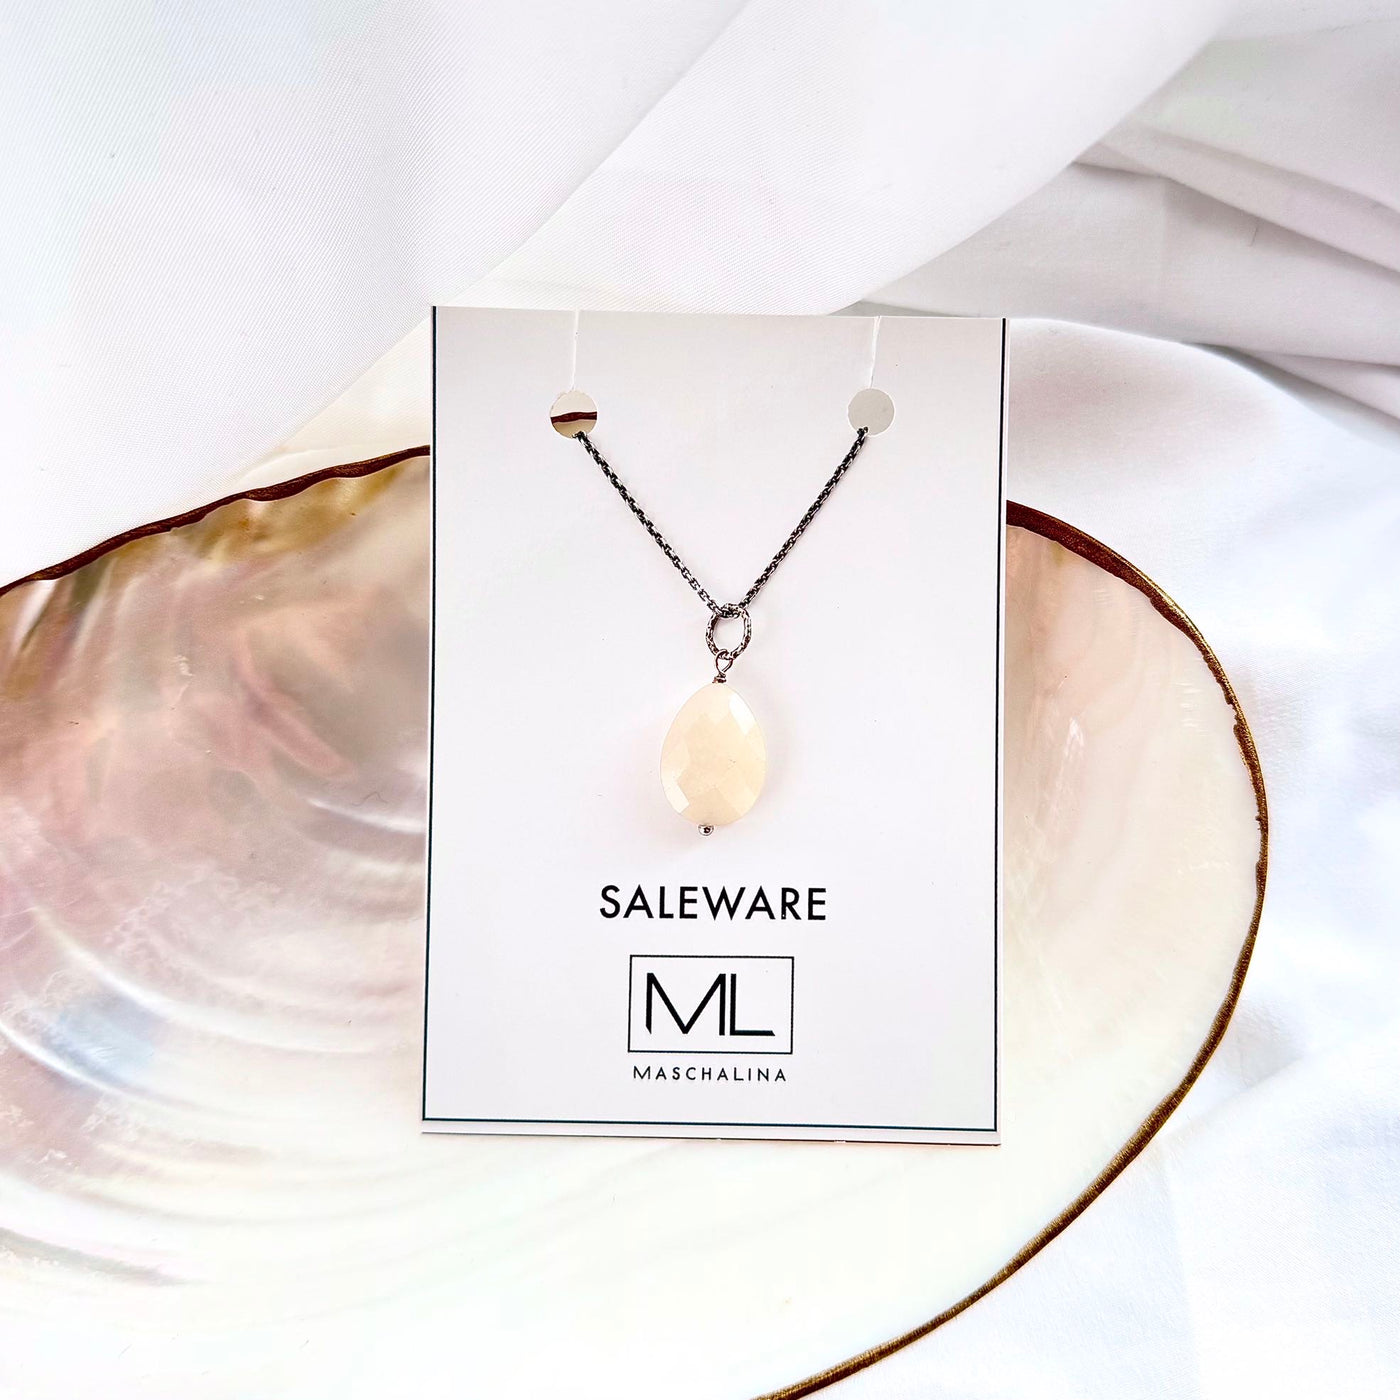 Monaco Silver Necklace SALE -71%